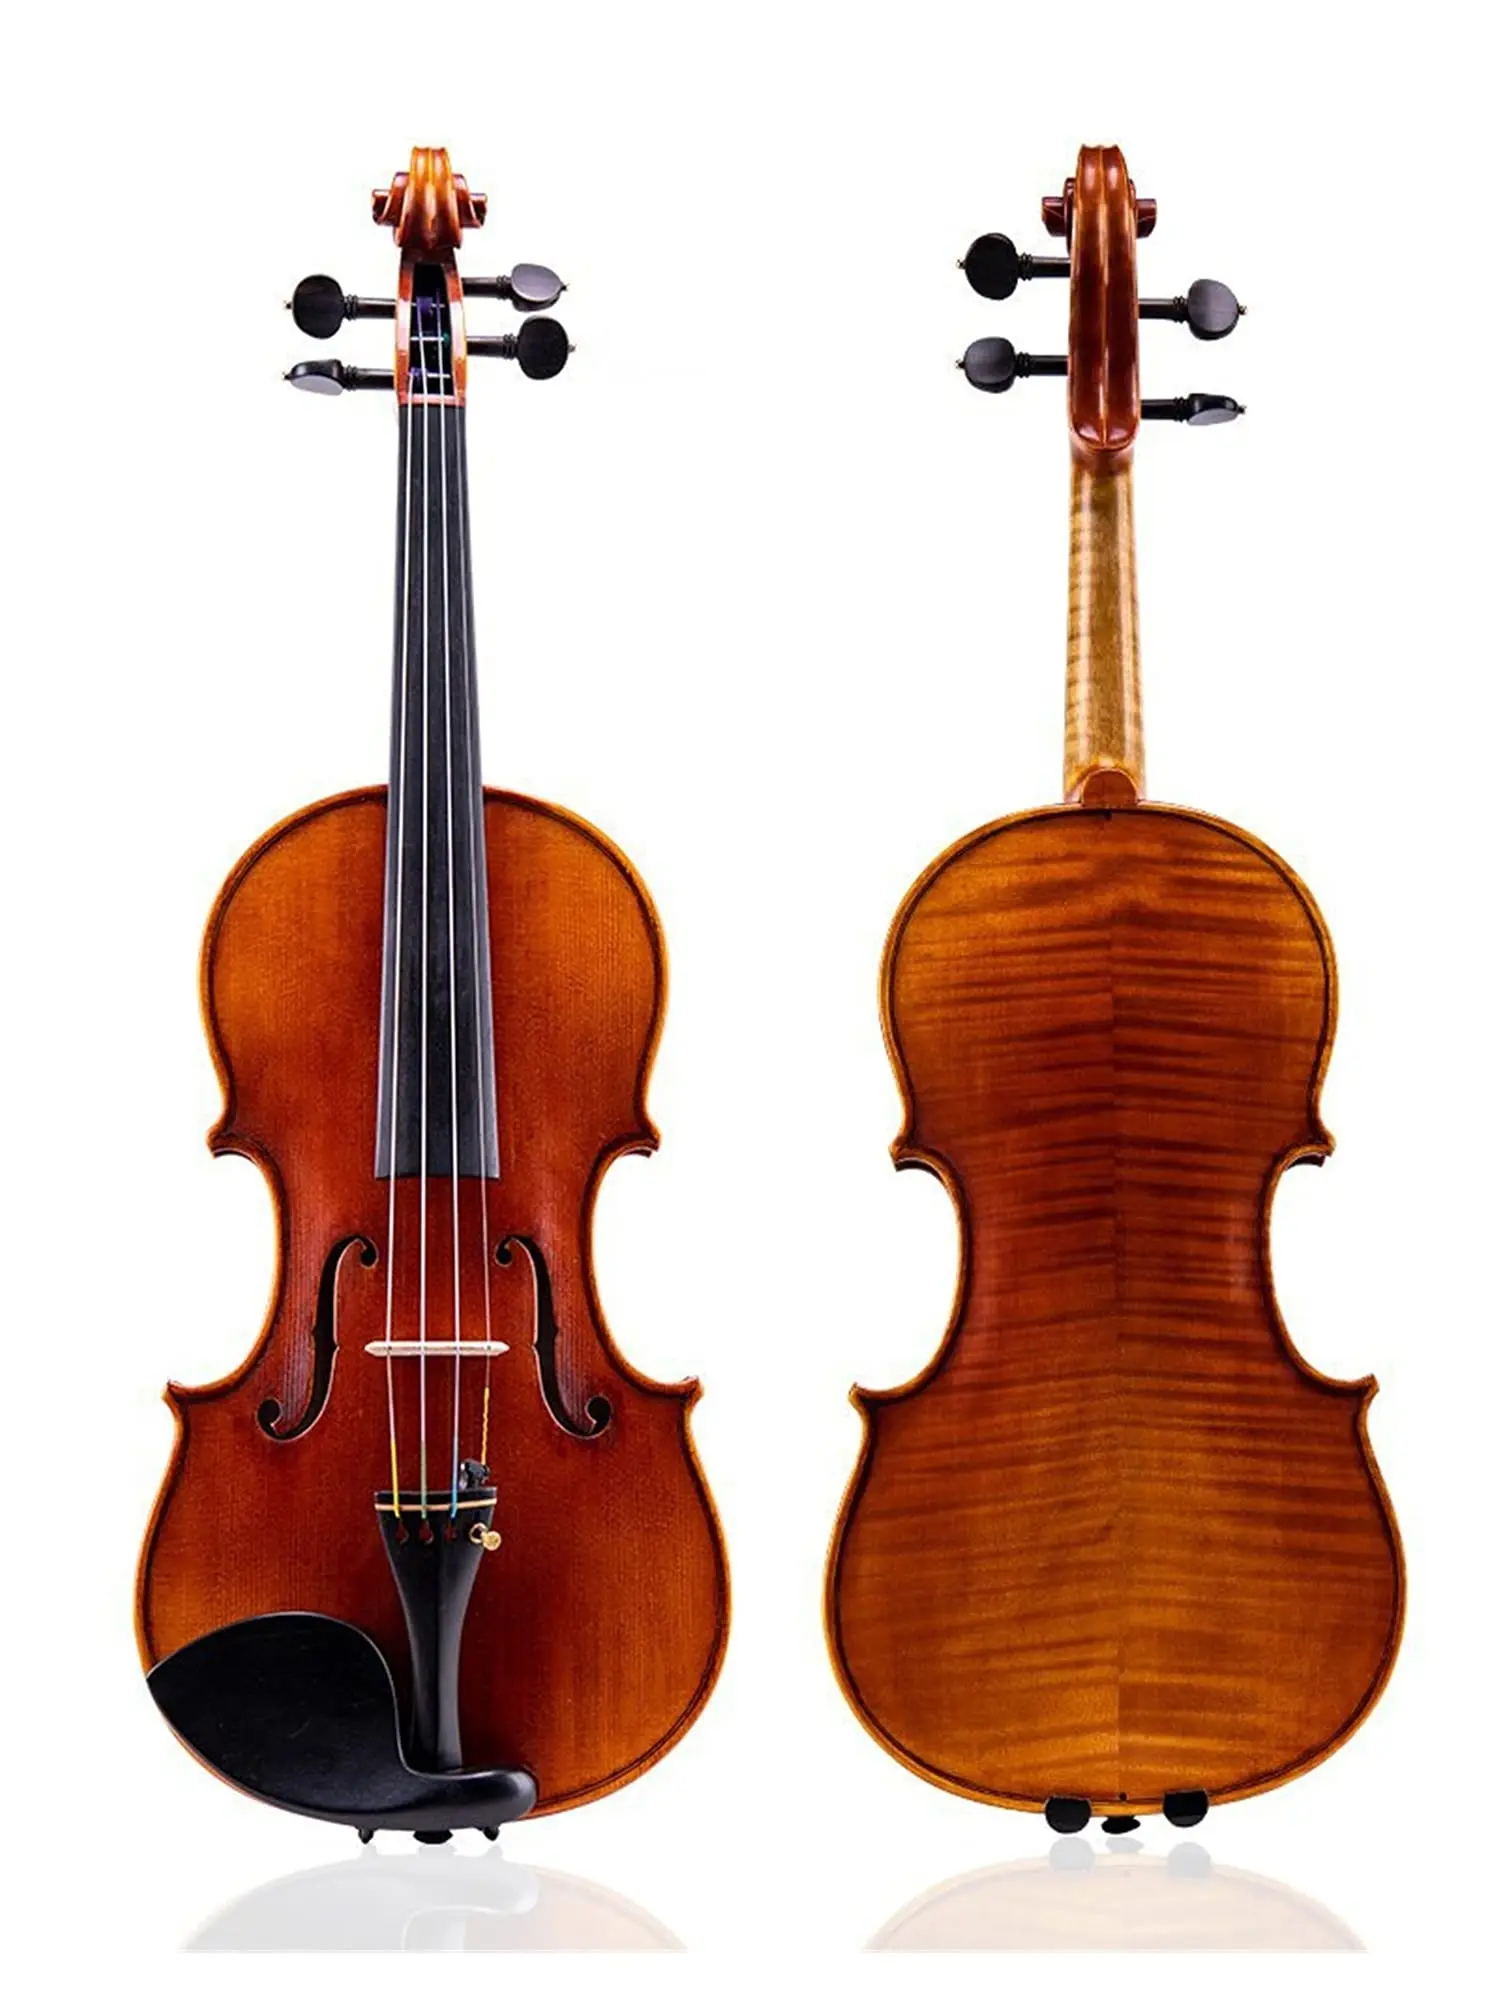 cuanto cuesta barnizar el violin - Importa el barniz para violín